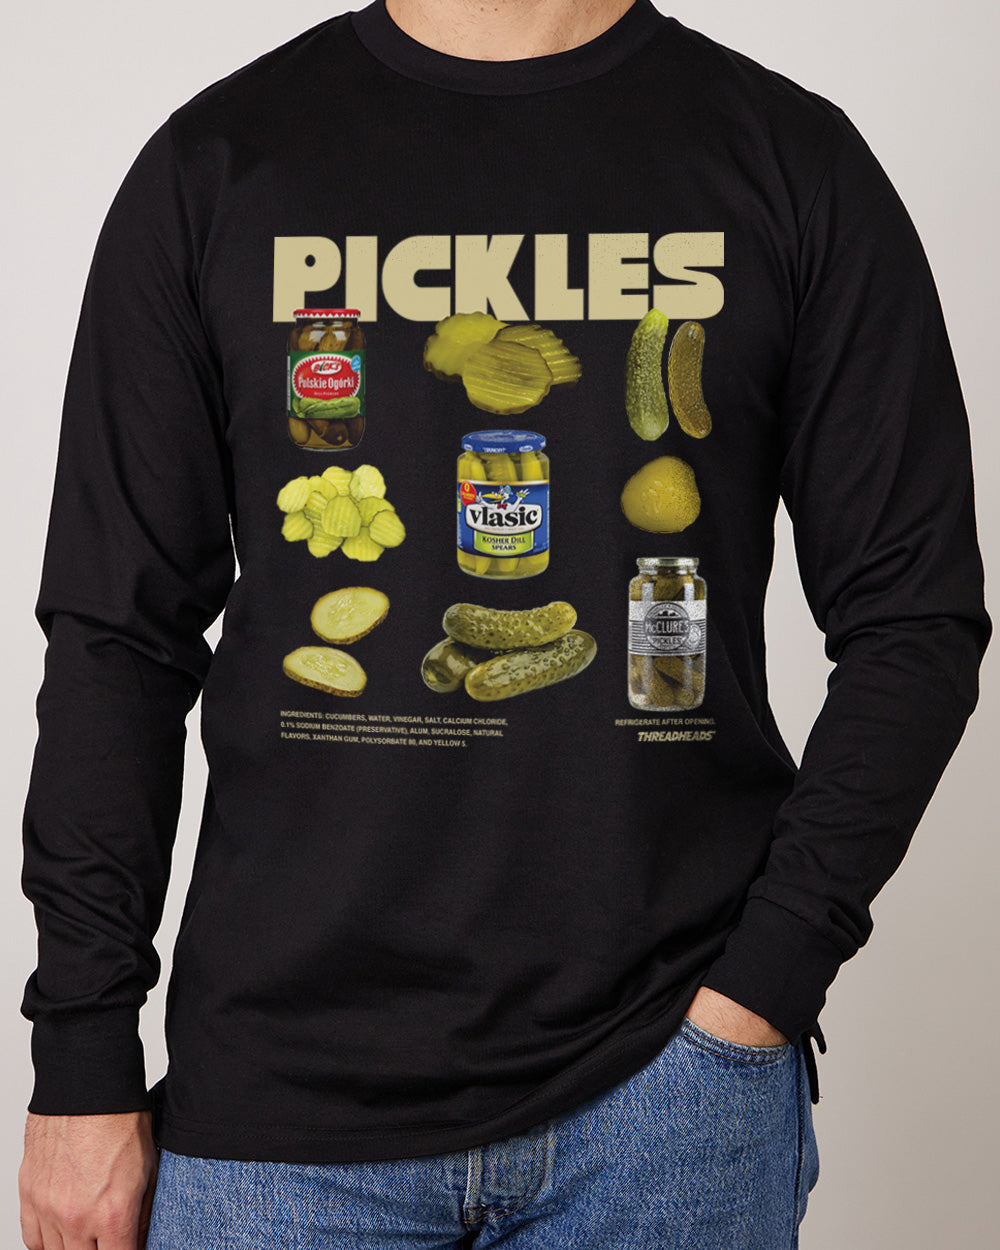 The Pickles Long Sleeve Australia Online Black